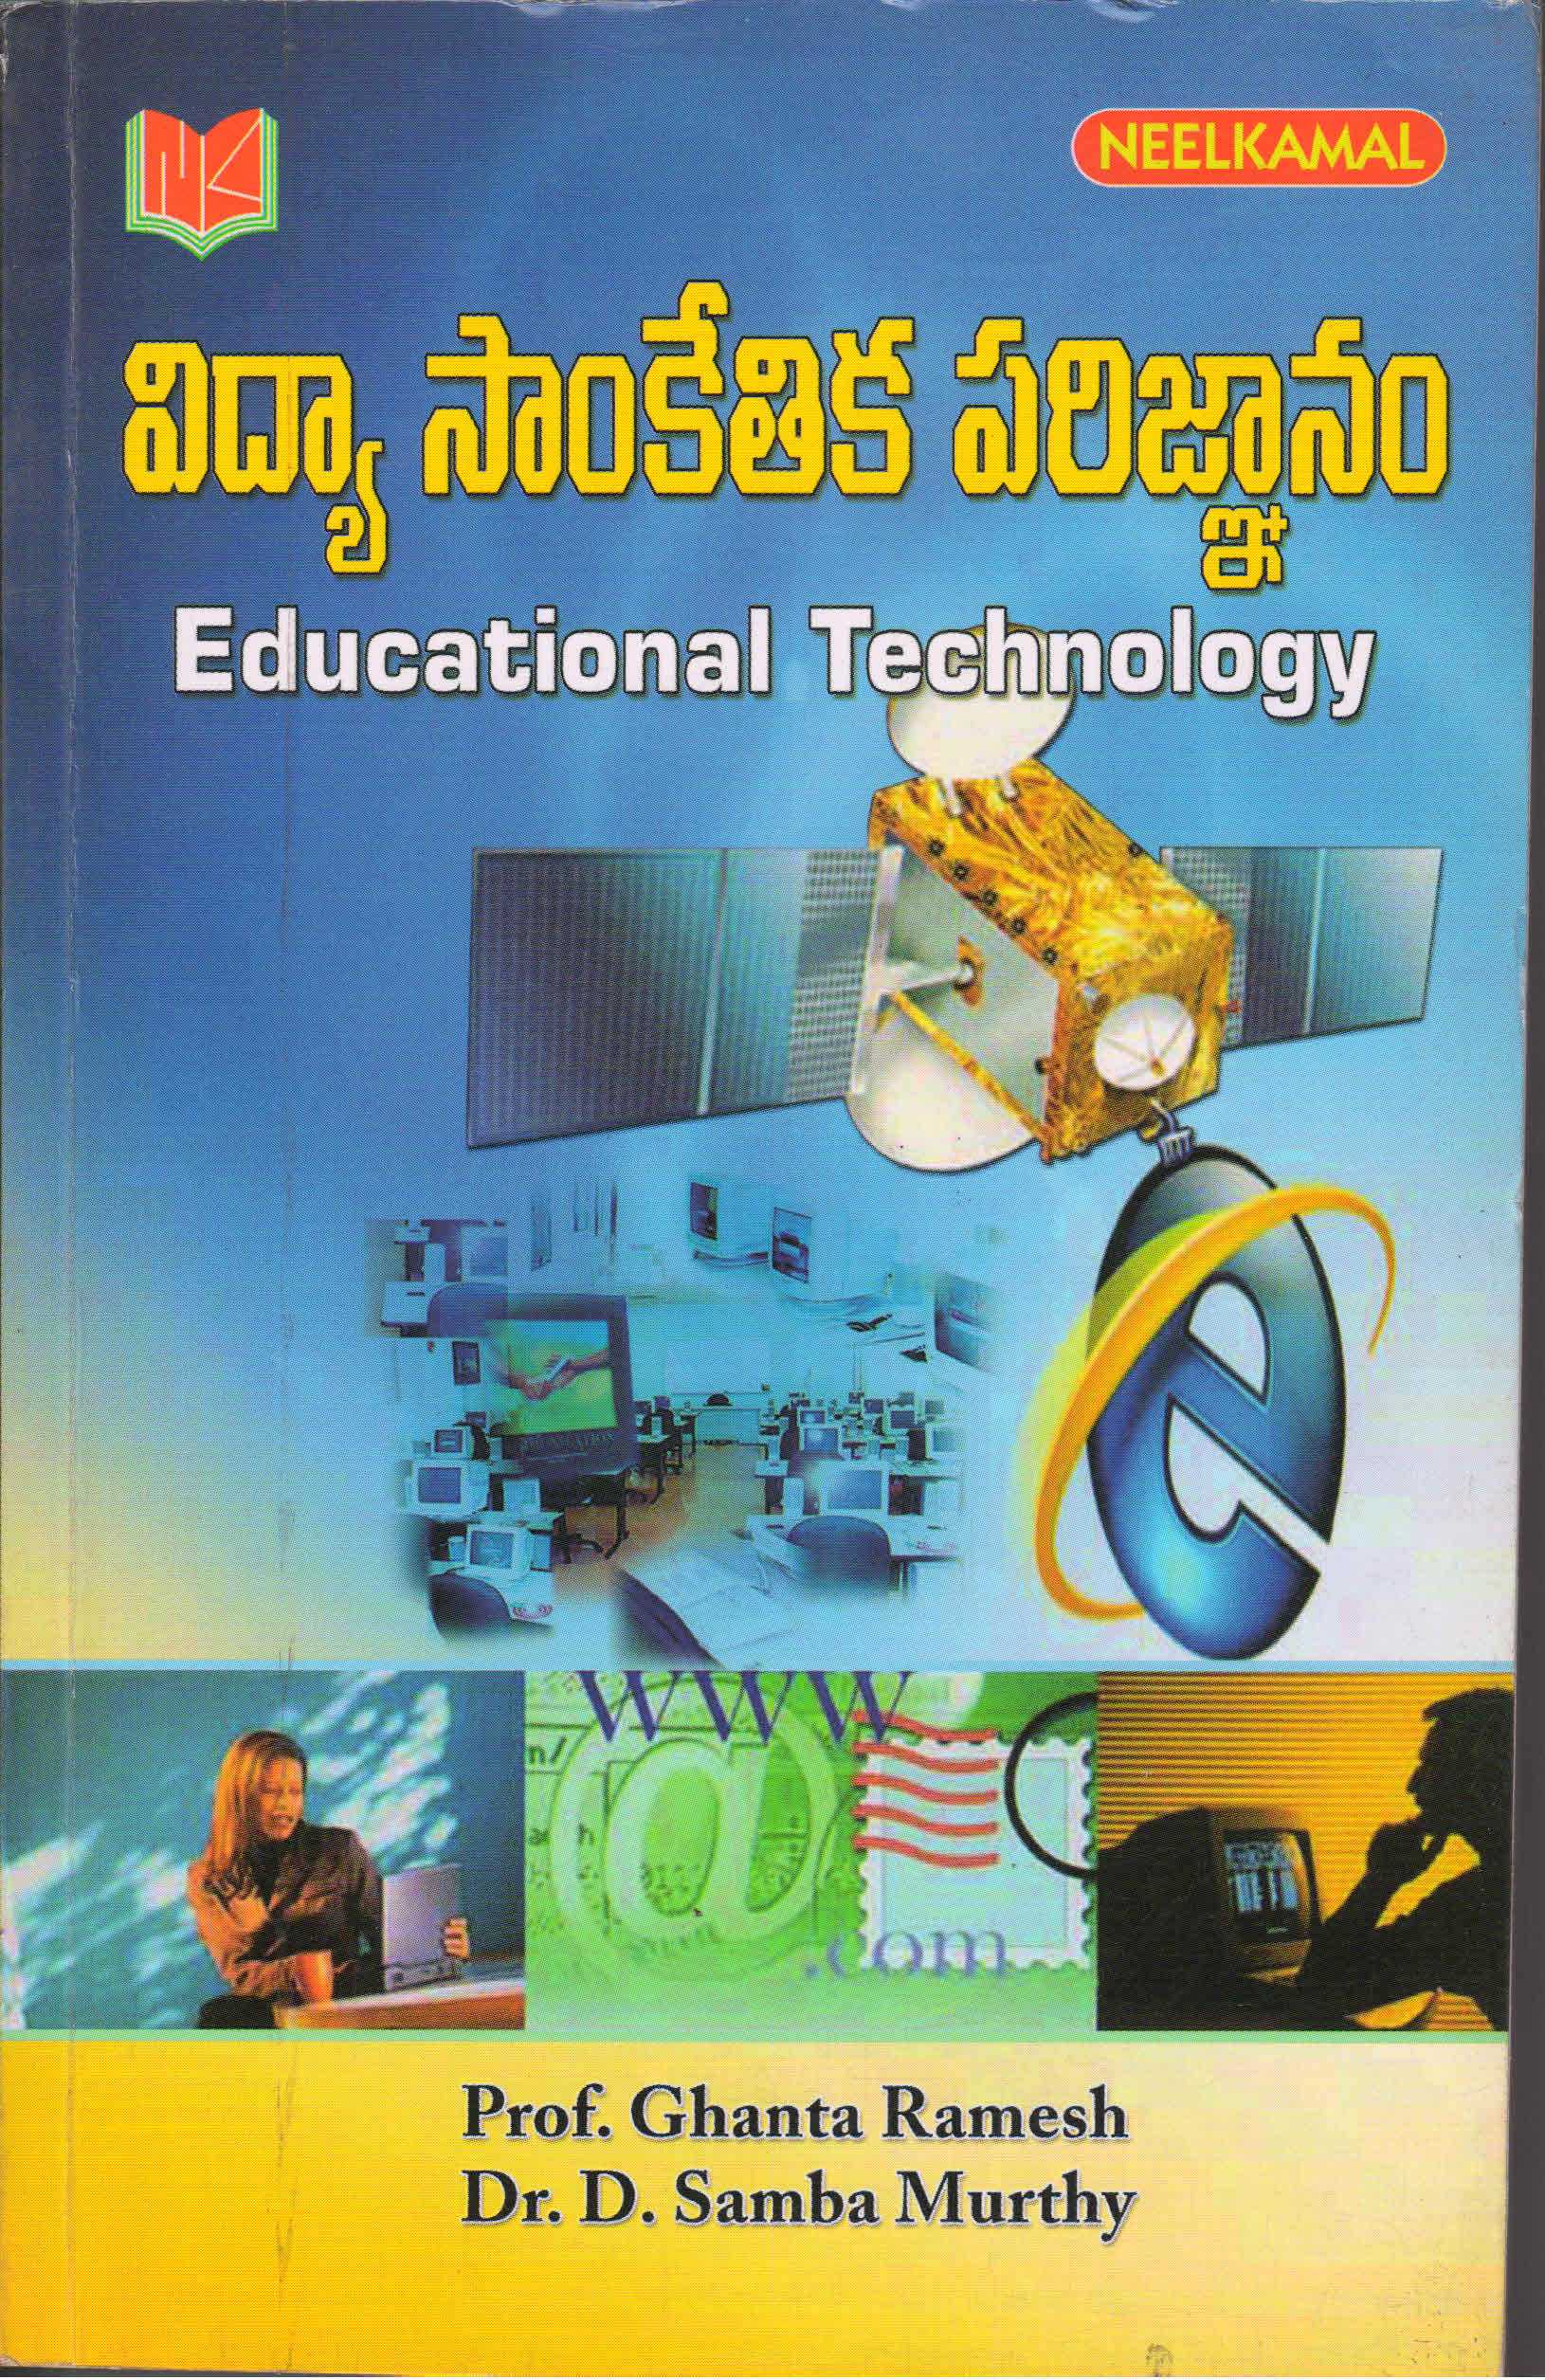 essay on technology in telugu